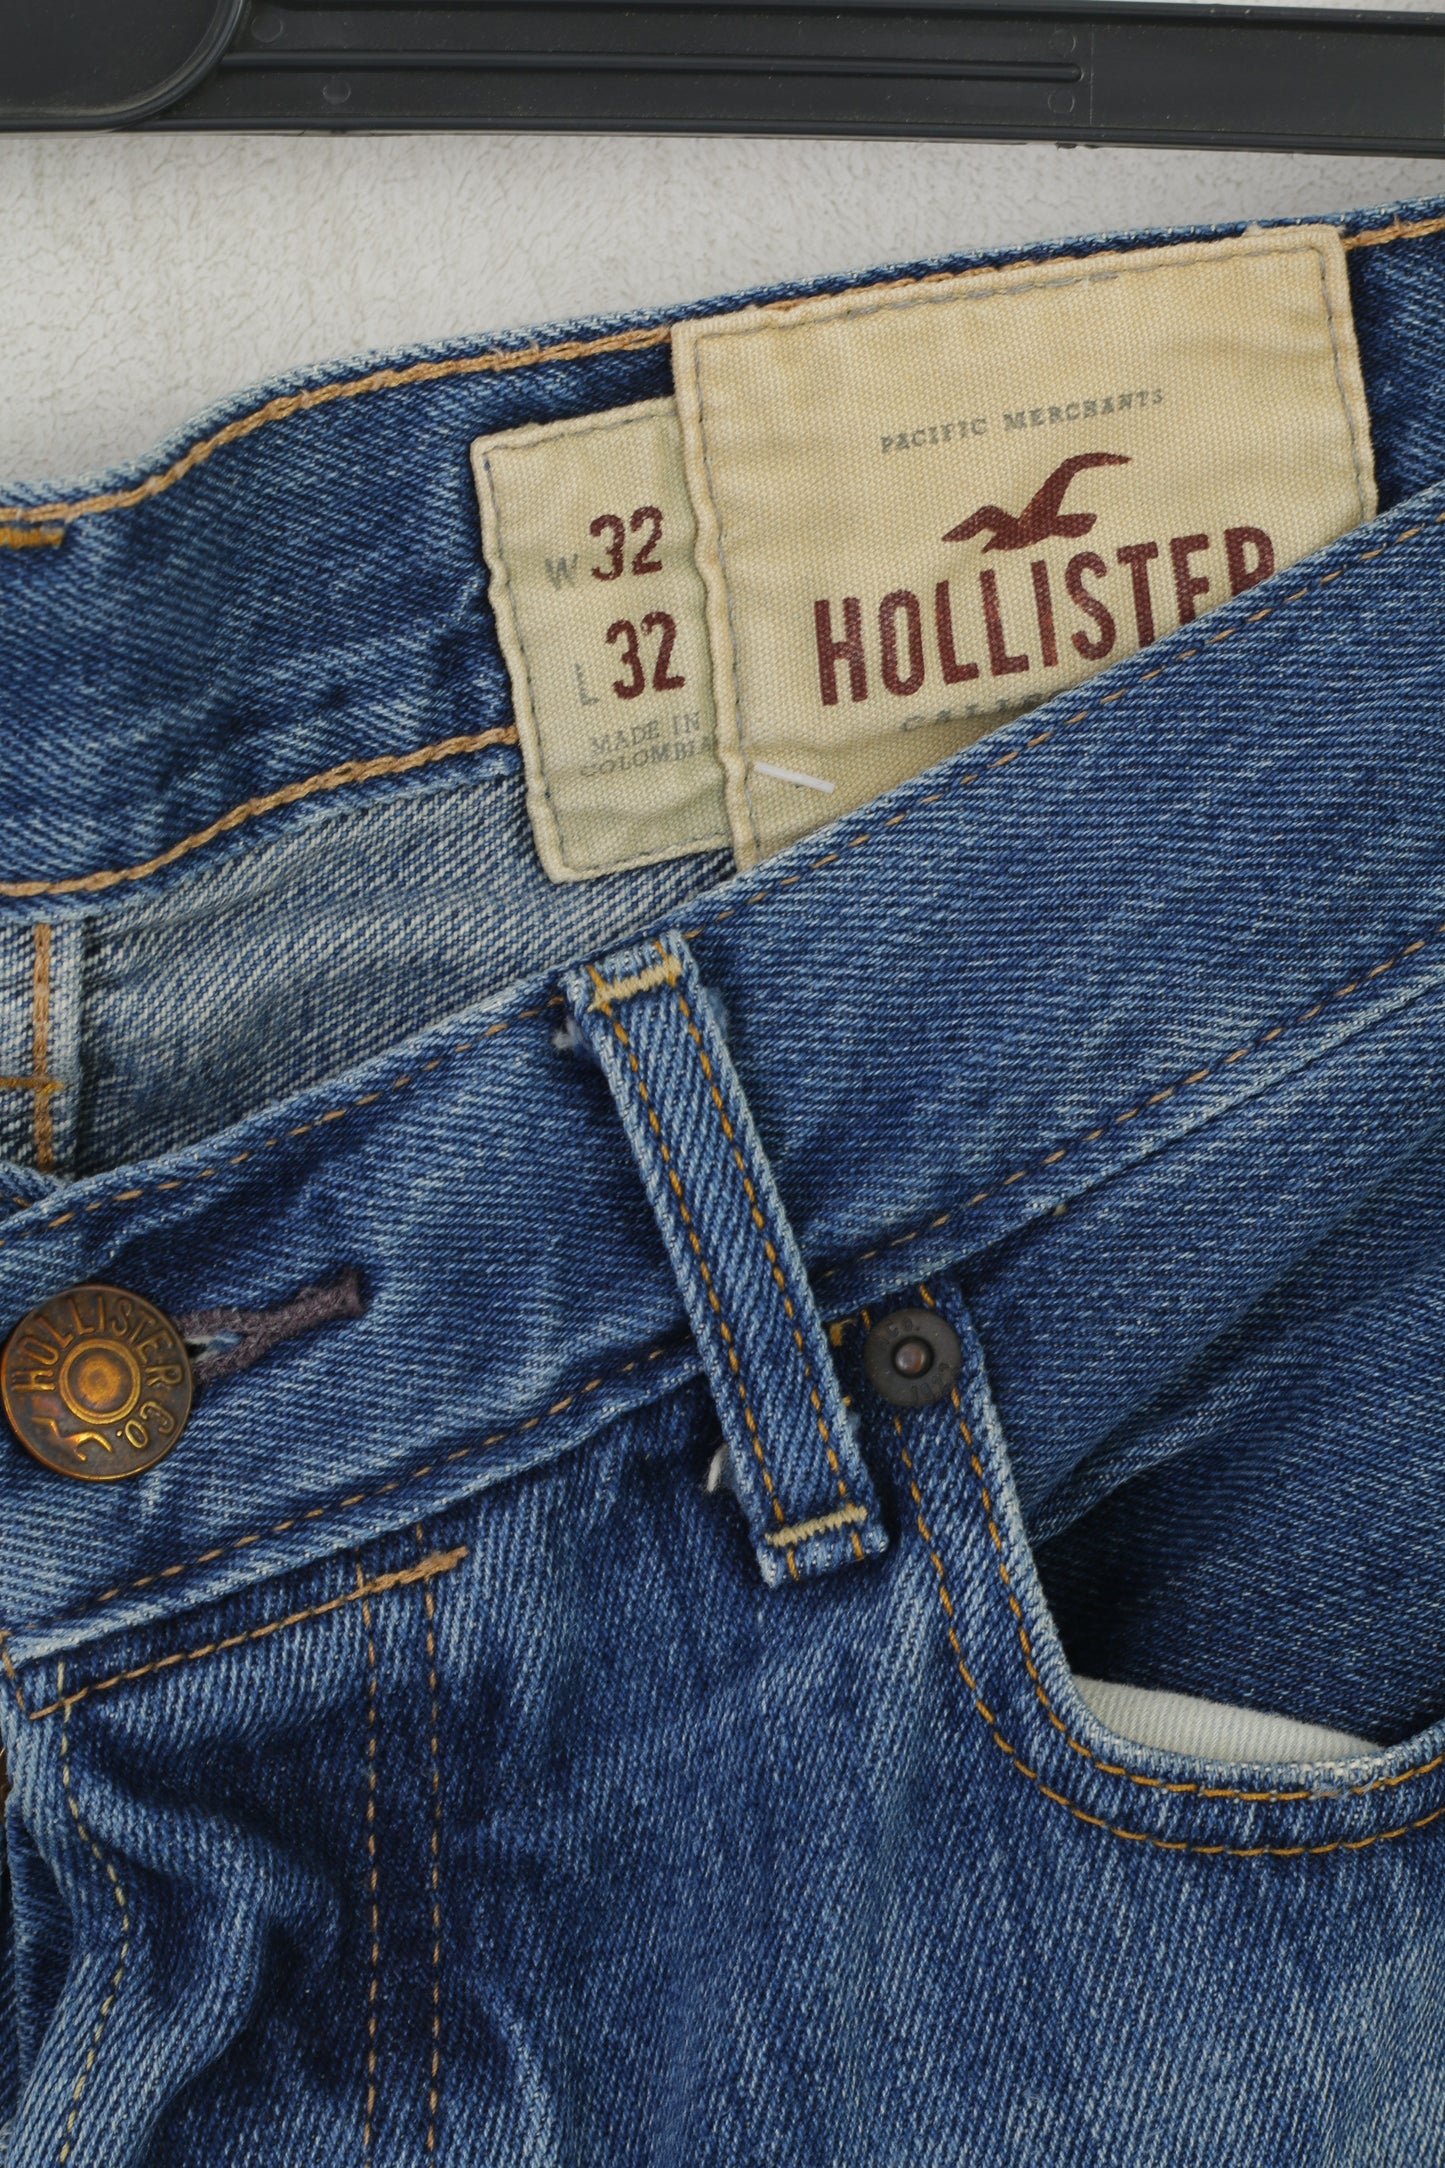 Hollister California Men 32 Jeans Pantalon Bleu Marine Pantalon En Denim Classique En Coton